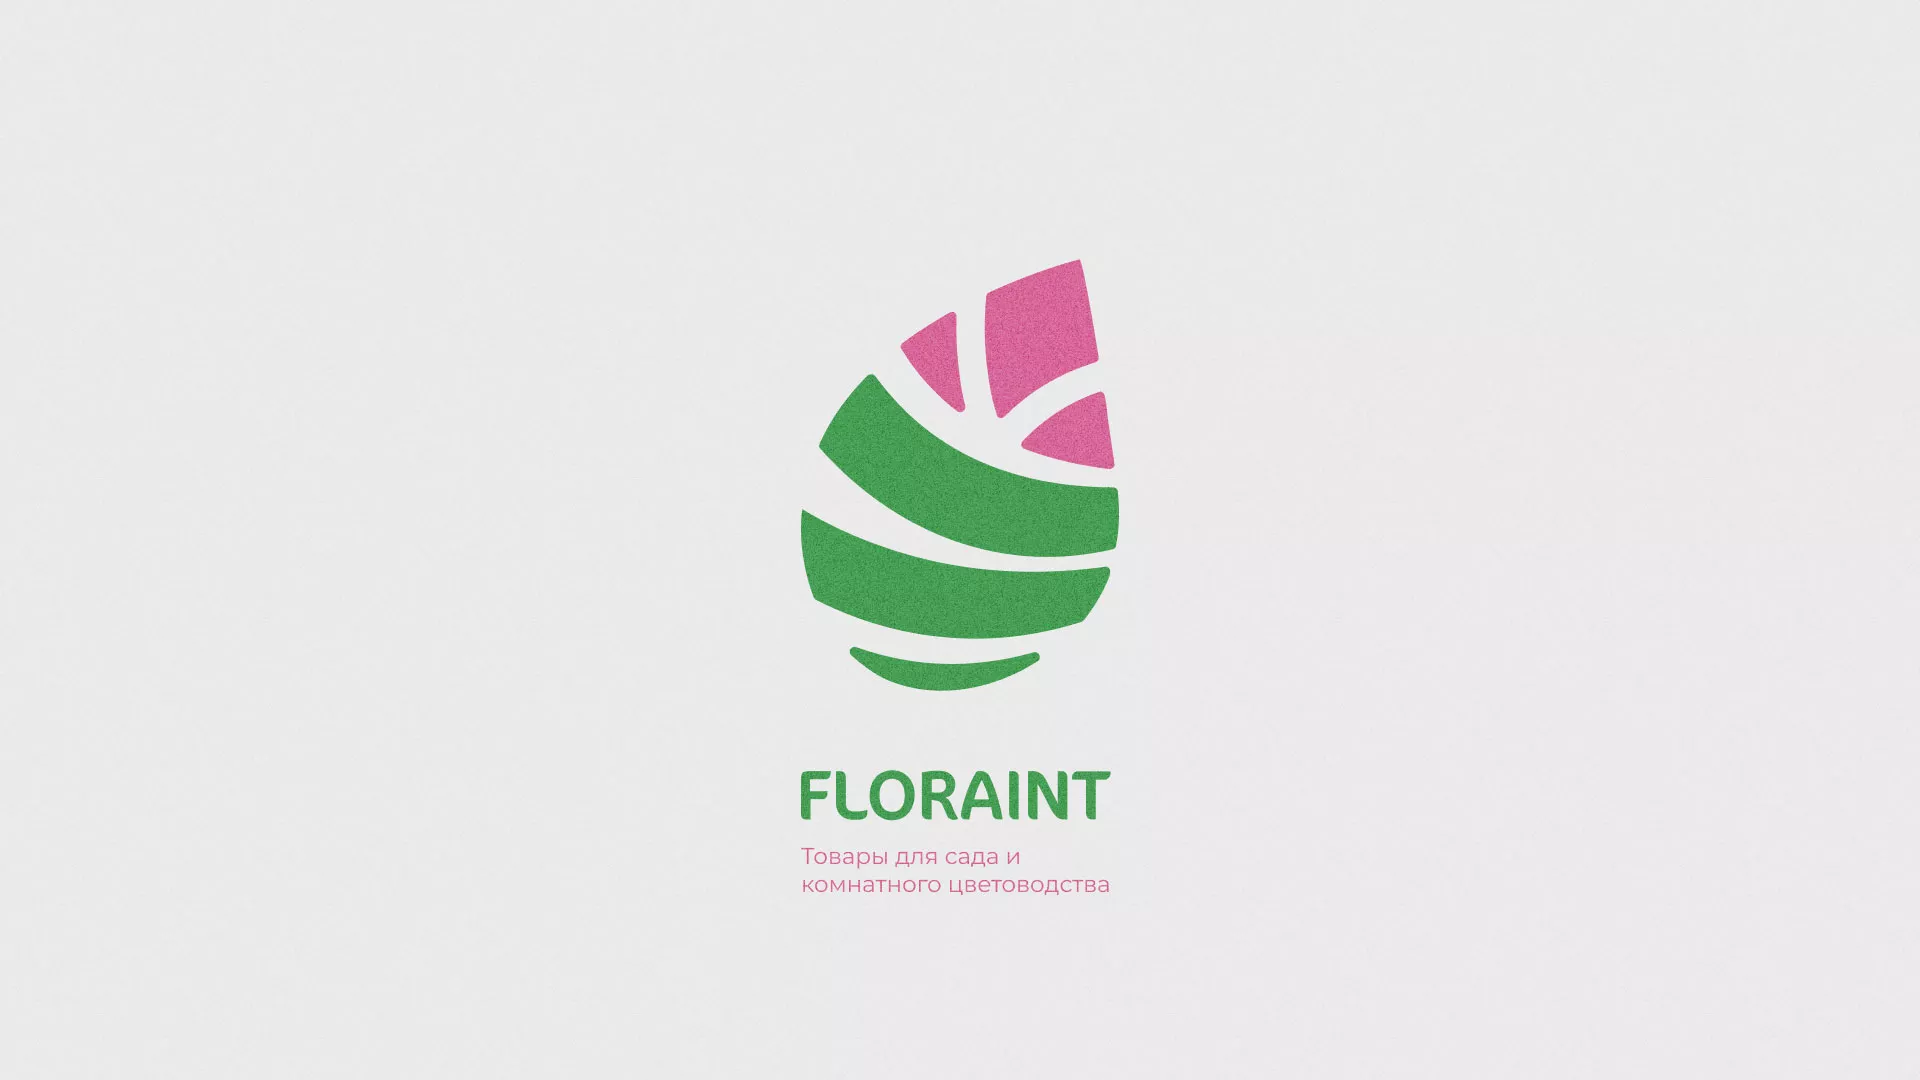 Разработка оформления профиля Instagram для магазина «Floraint» в Вышнем Волочке